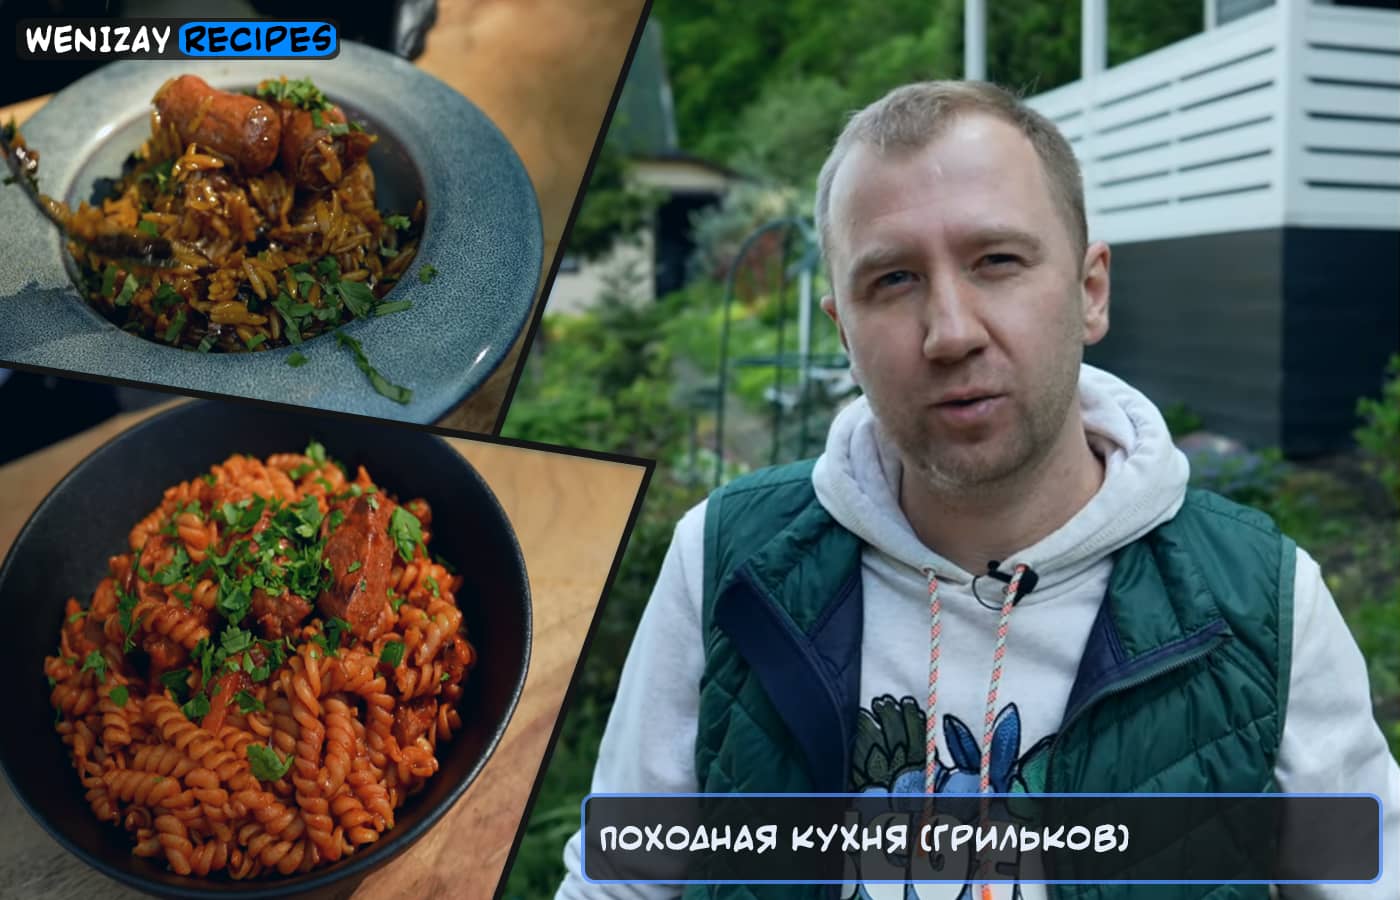 Походная кухня (видео) - Грильков, WeniZAYRecipes (видео рецепты)